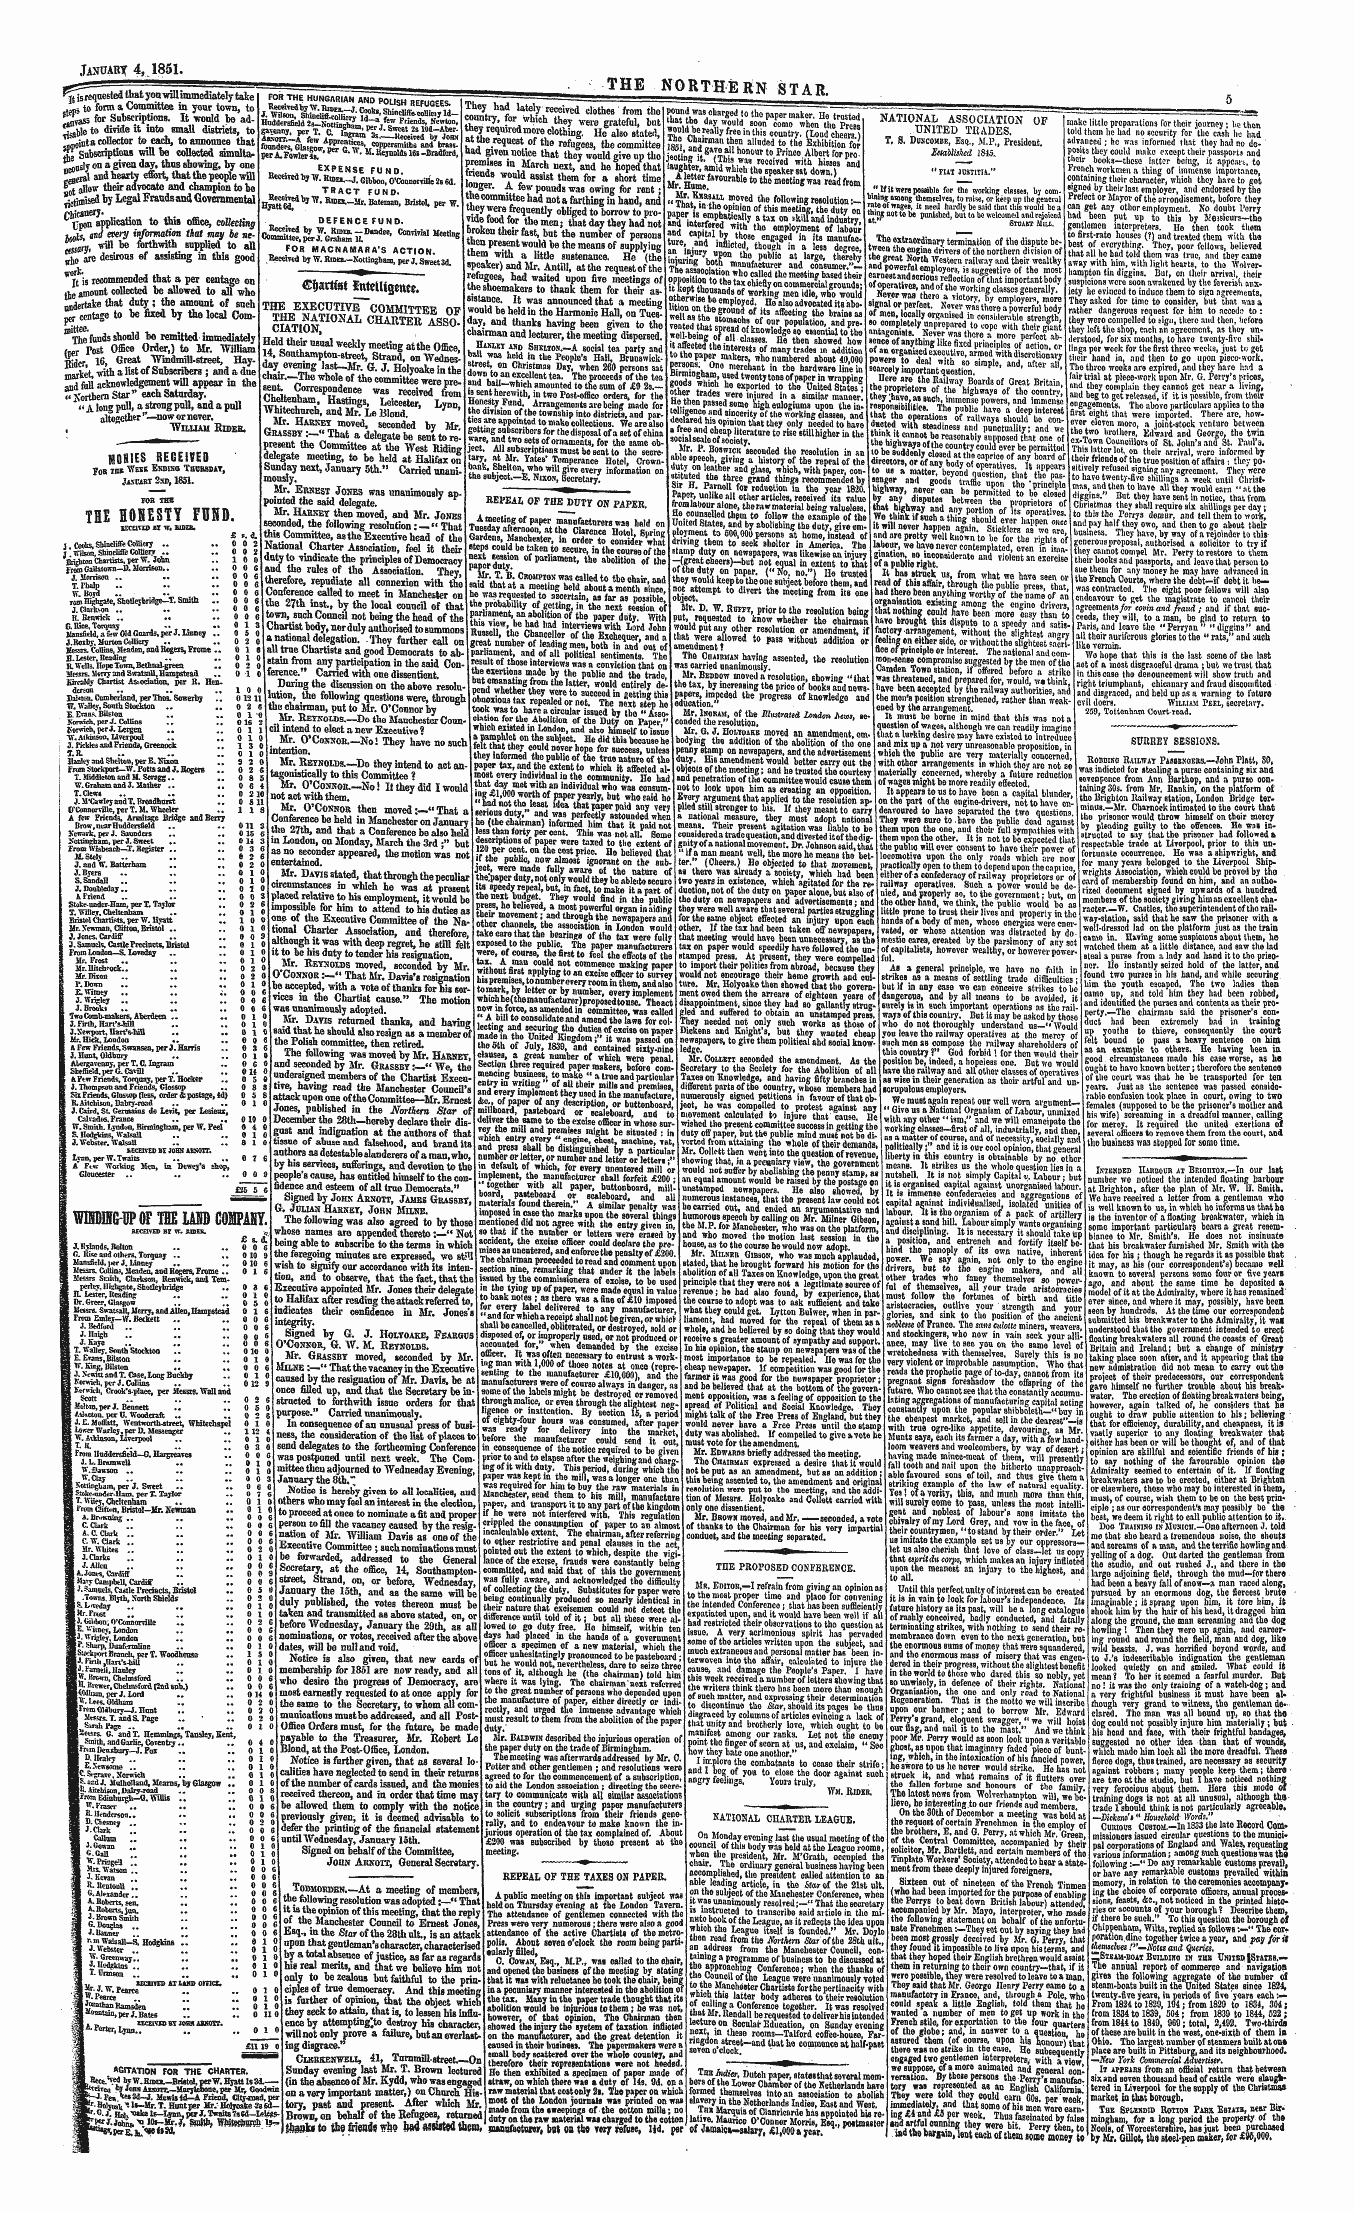 Northern Star (1837-1852): jS F Y, 1st edition - ——"^P*— C^Artwt Ettmltgetwfc